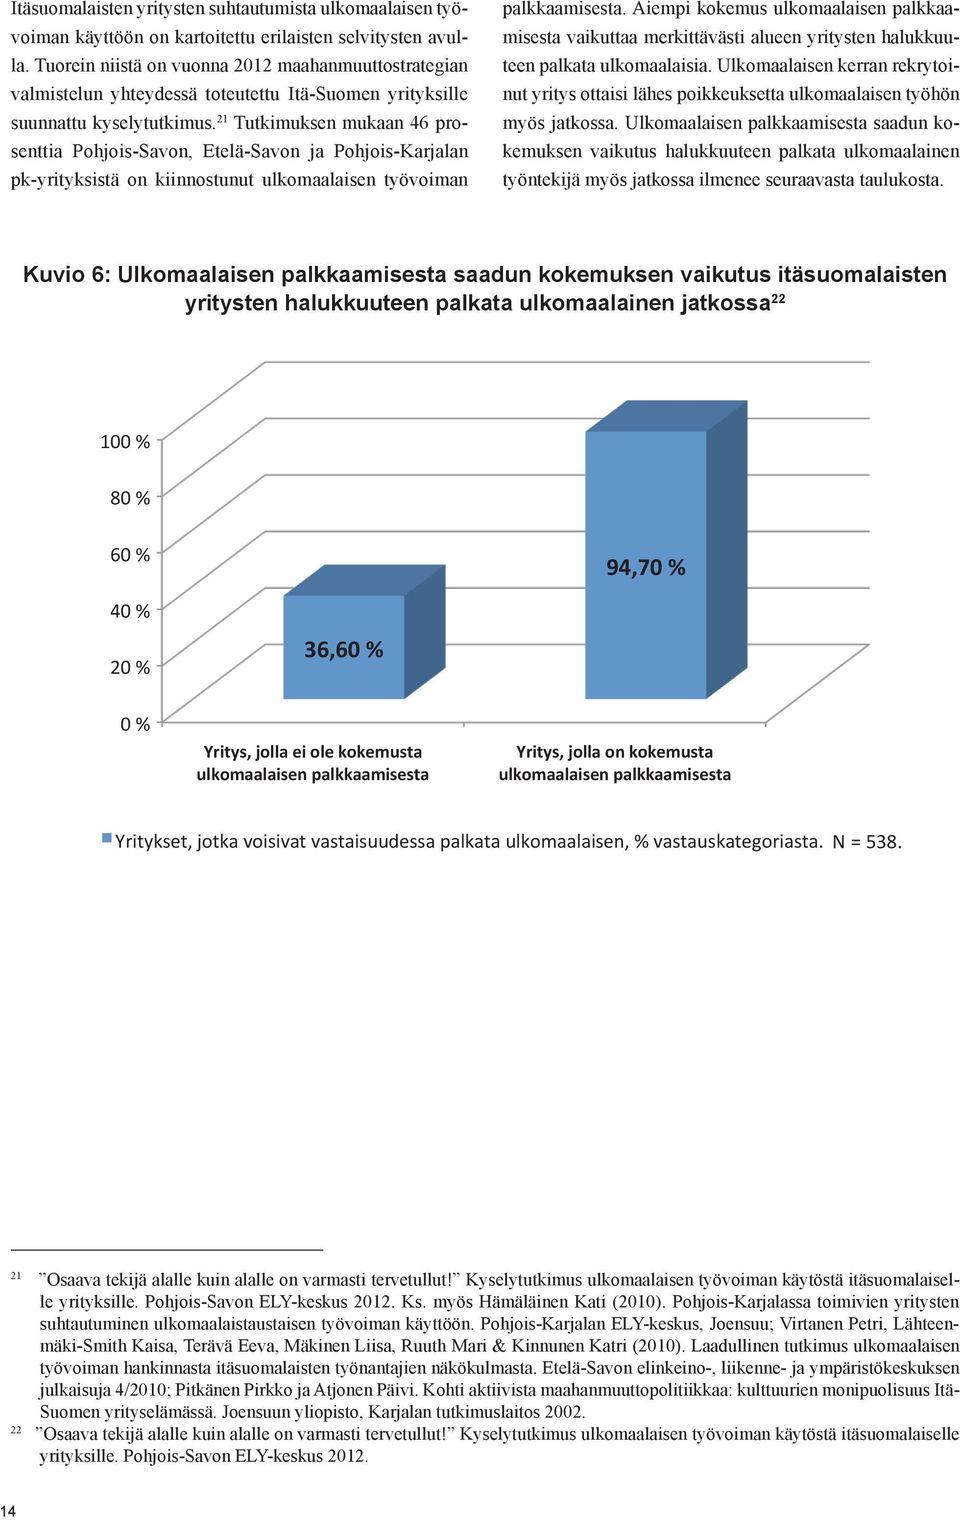 21 Tutkimuksen mukaan 46 prosenttia Pohjois-Savon, Etelä-Savon ja Pohjois-Karjalan pk-yrityksistä on kiinnostunut ulkomaalaisen työvoiman palkkaamisesta.